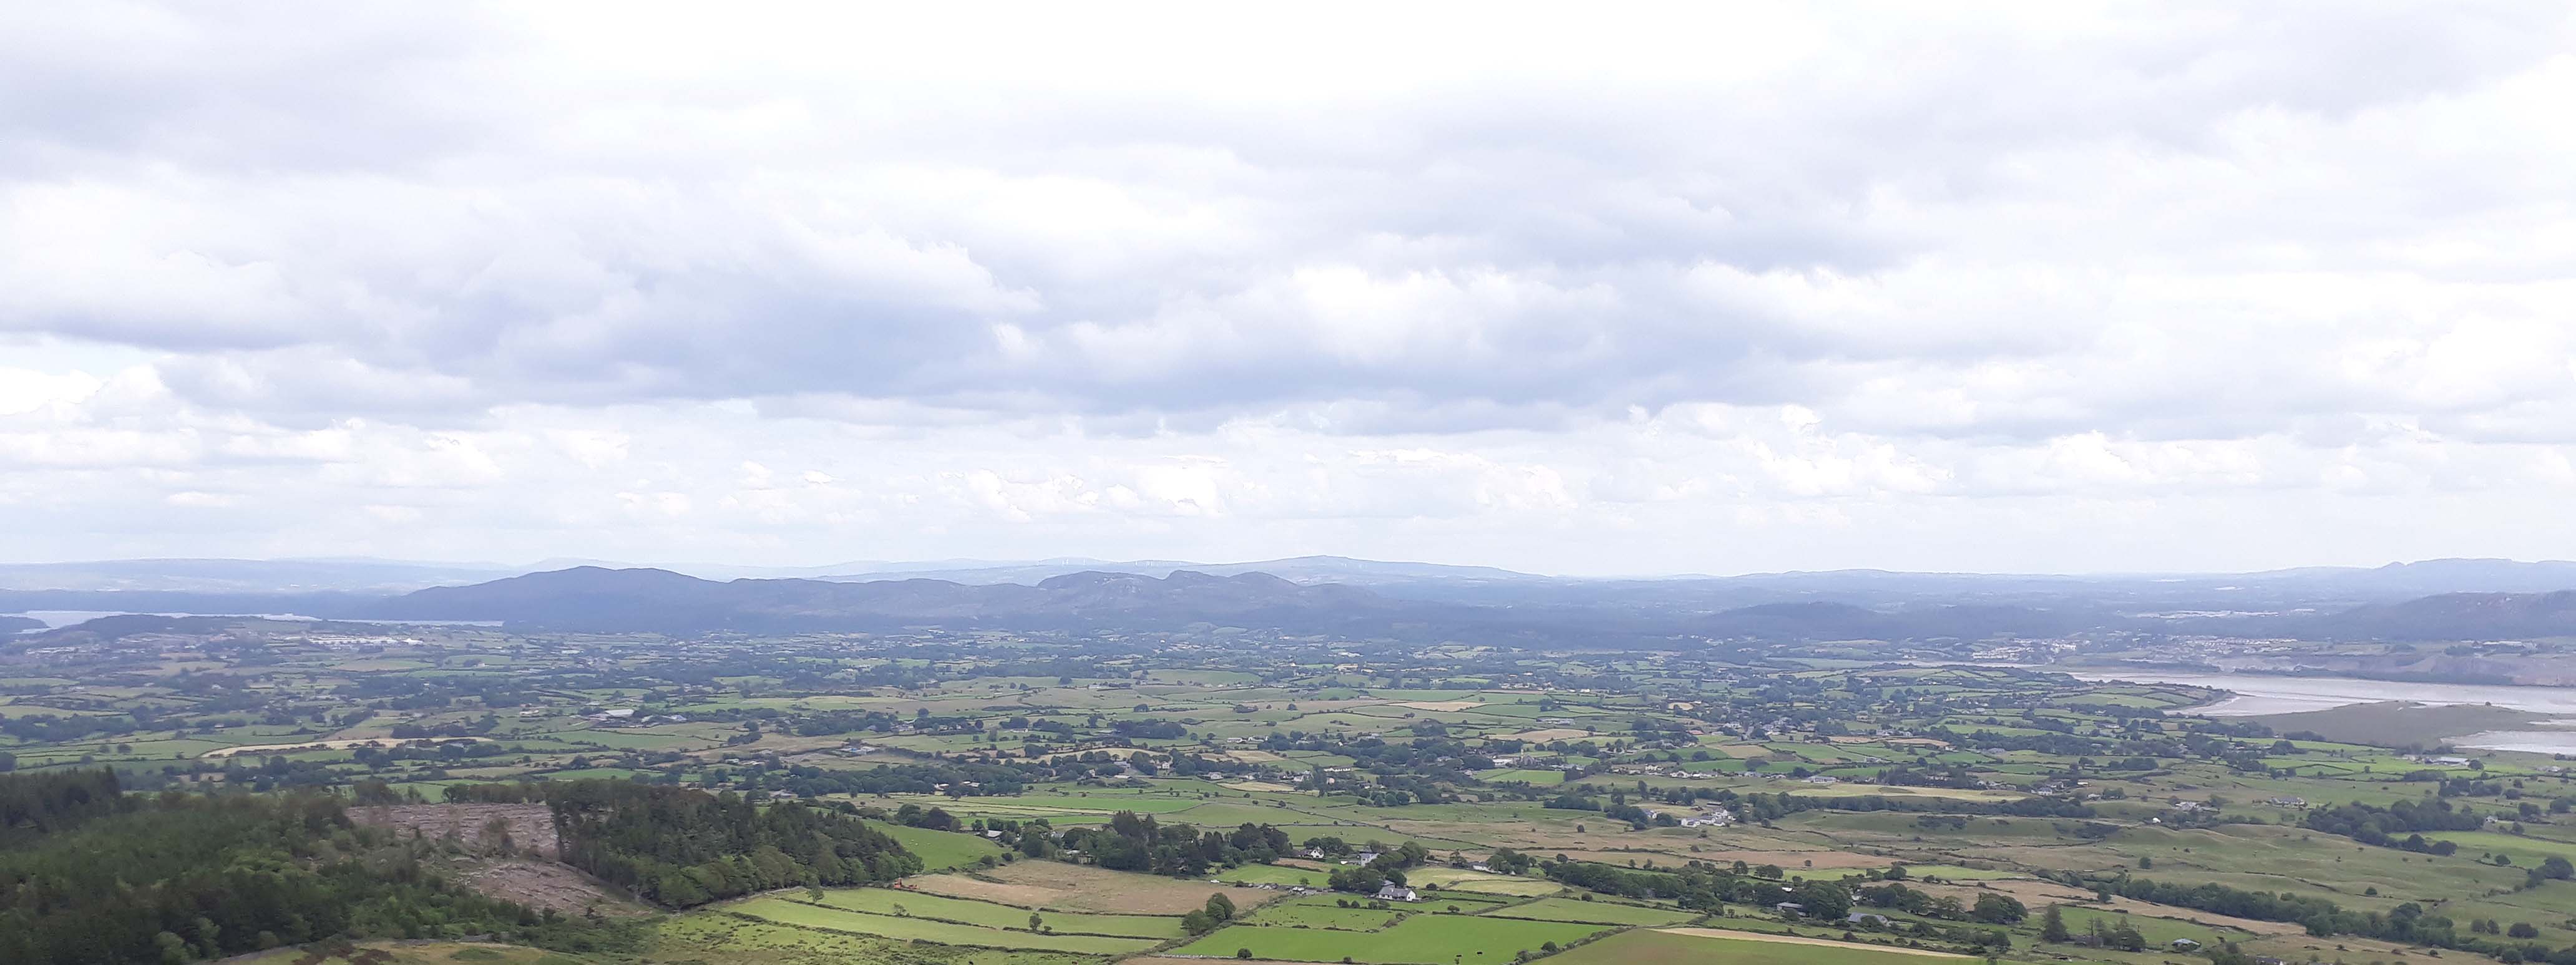 The view east from Knocknarea, near Strandhill, Co. Sligo.